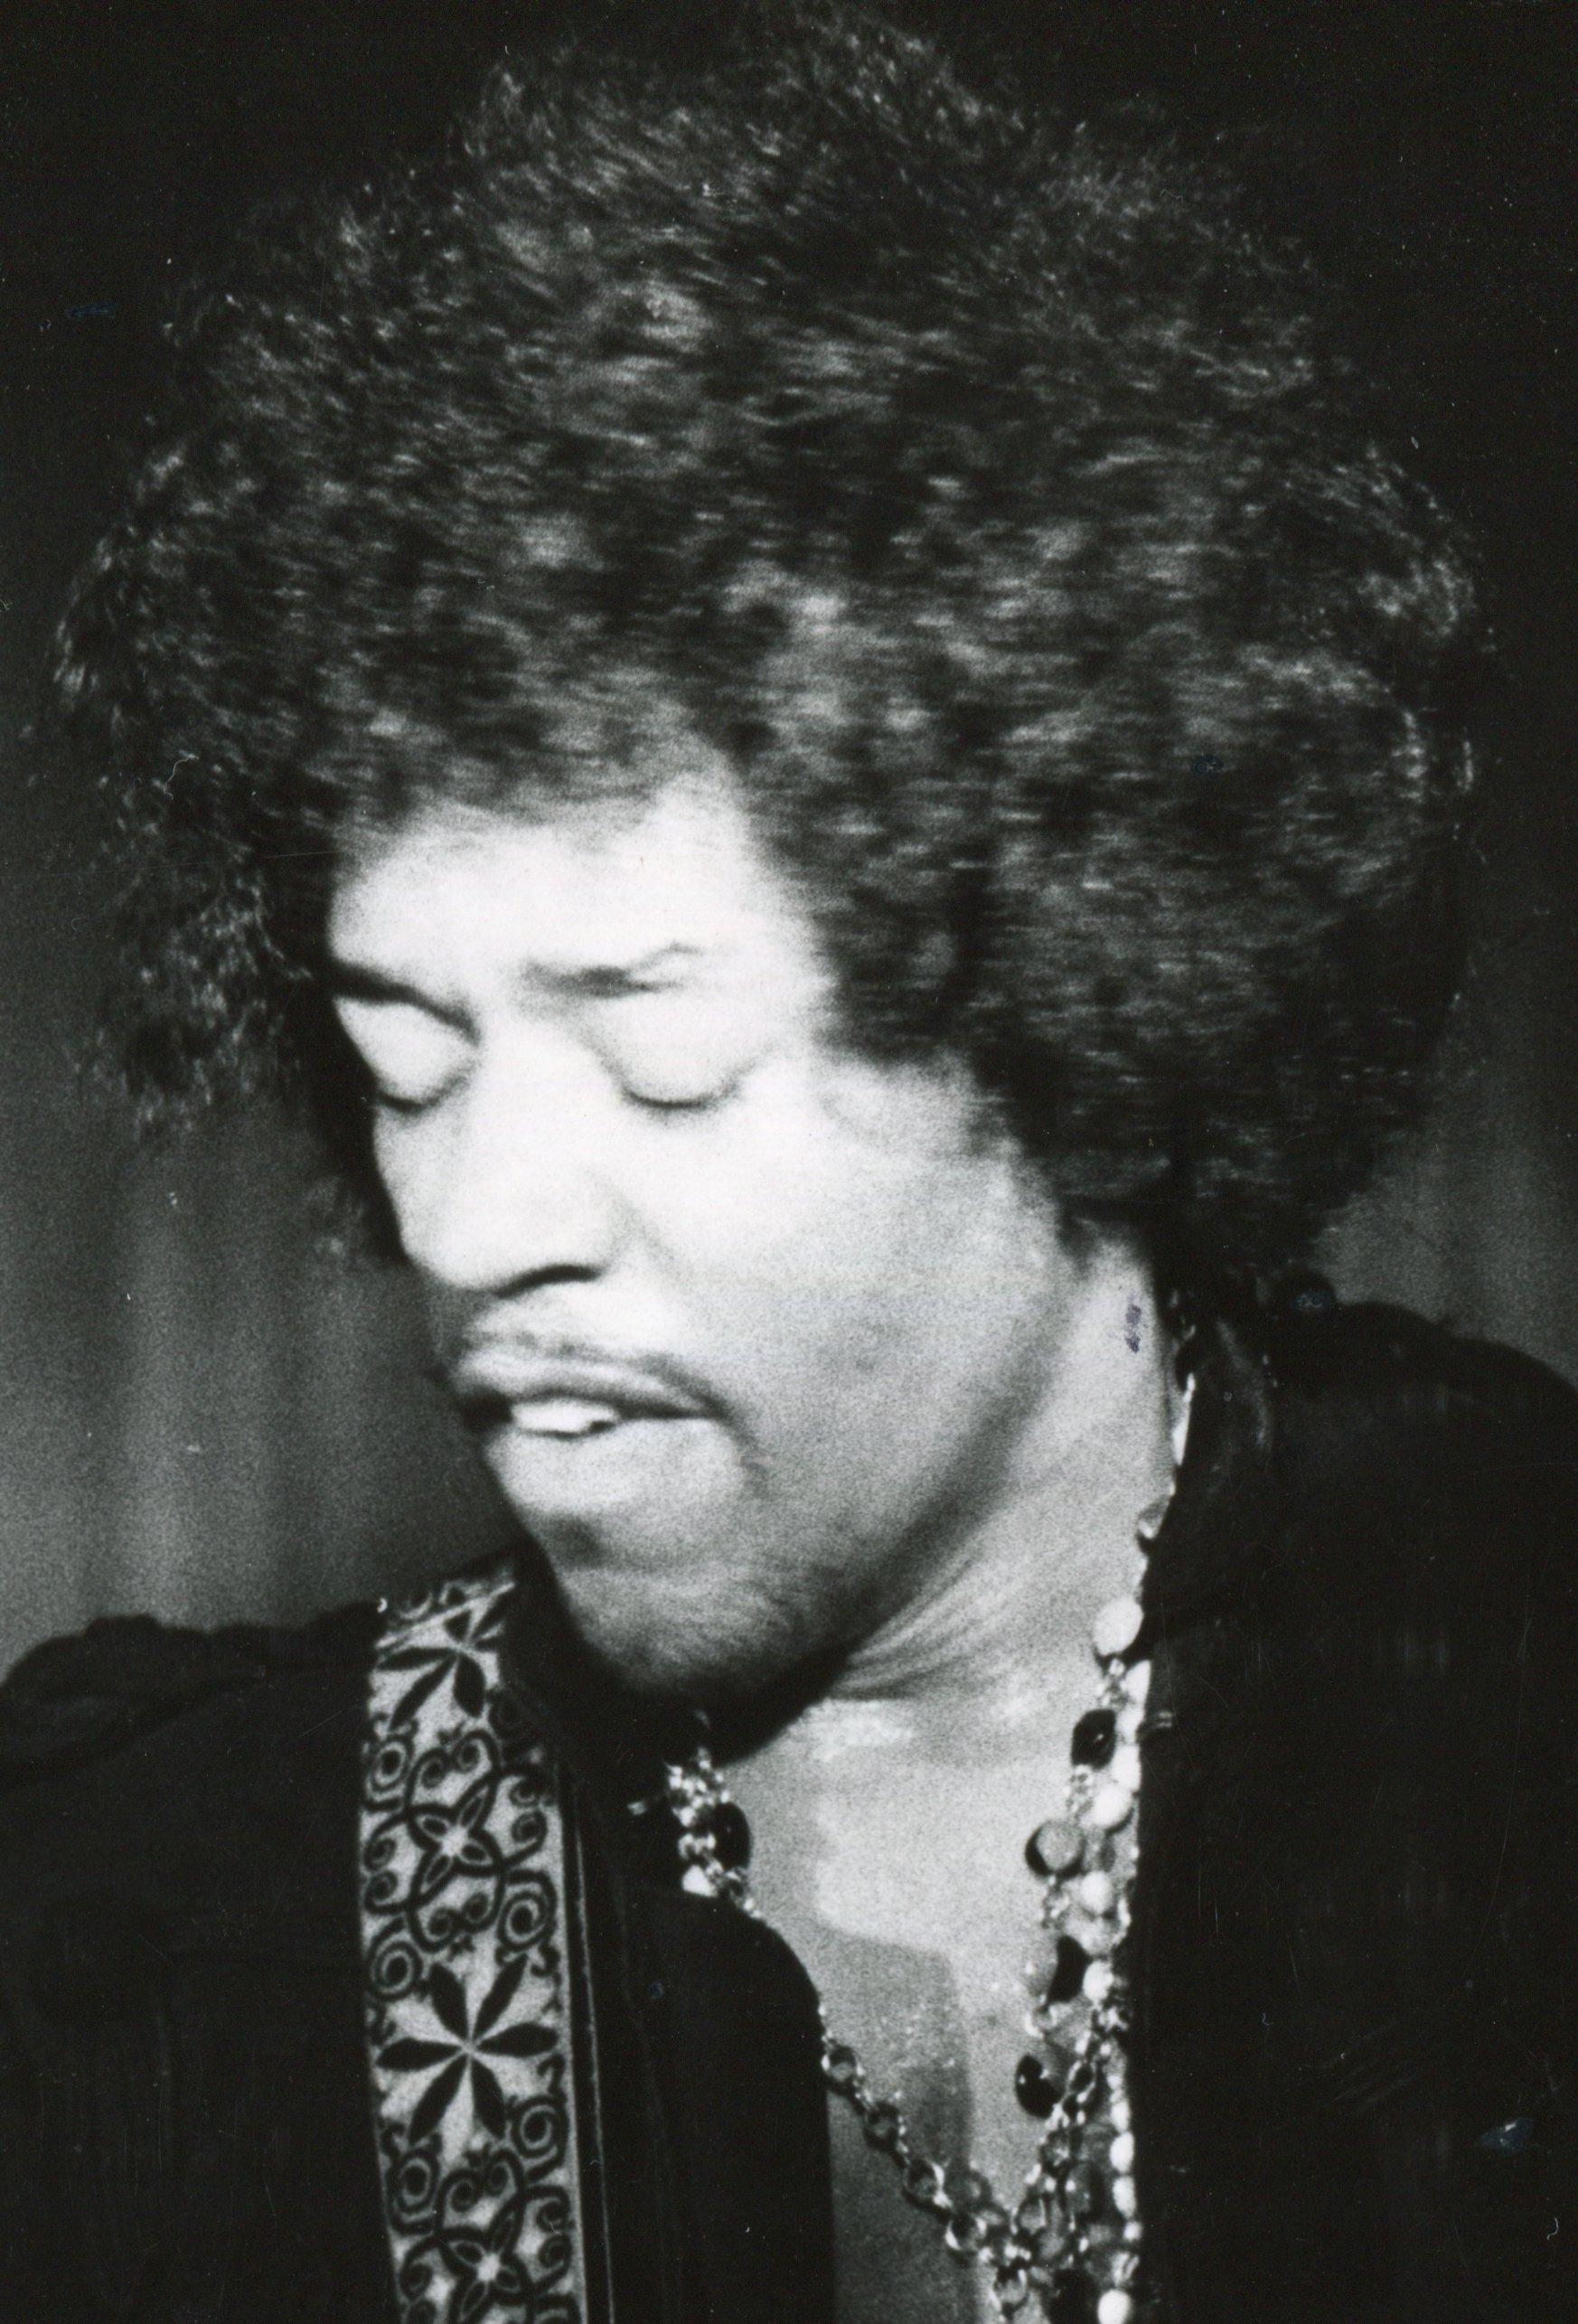 Live-Konzert von Jimi Hendrix – Photograph von Henry Grossman